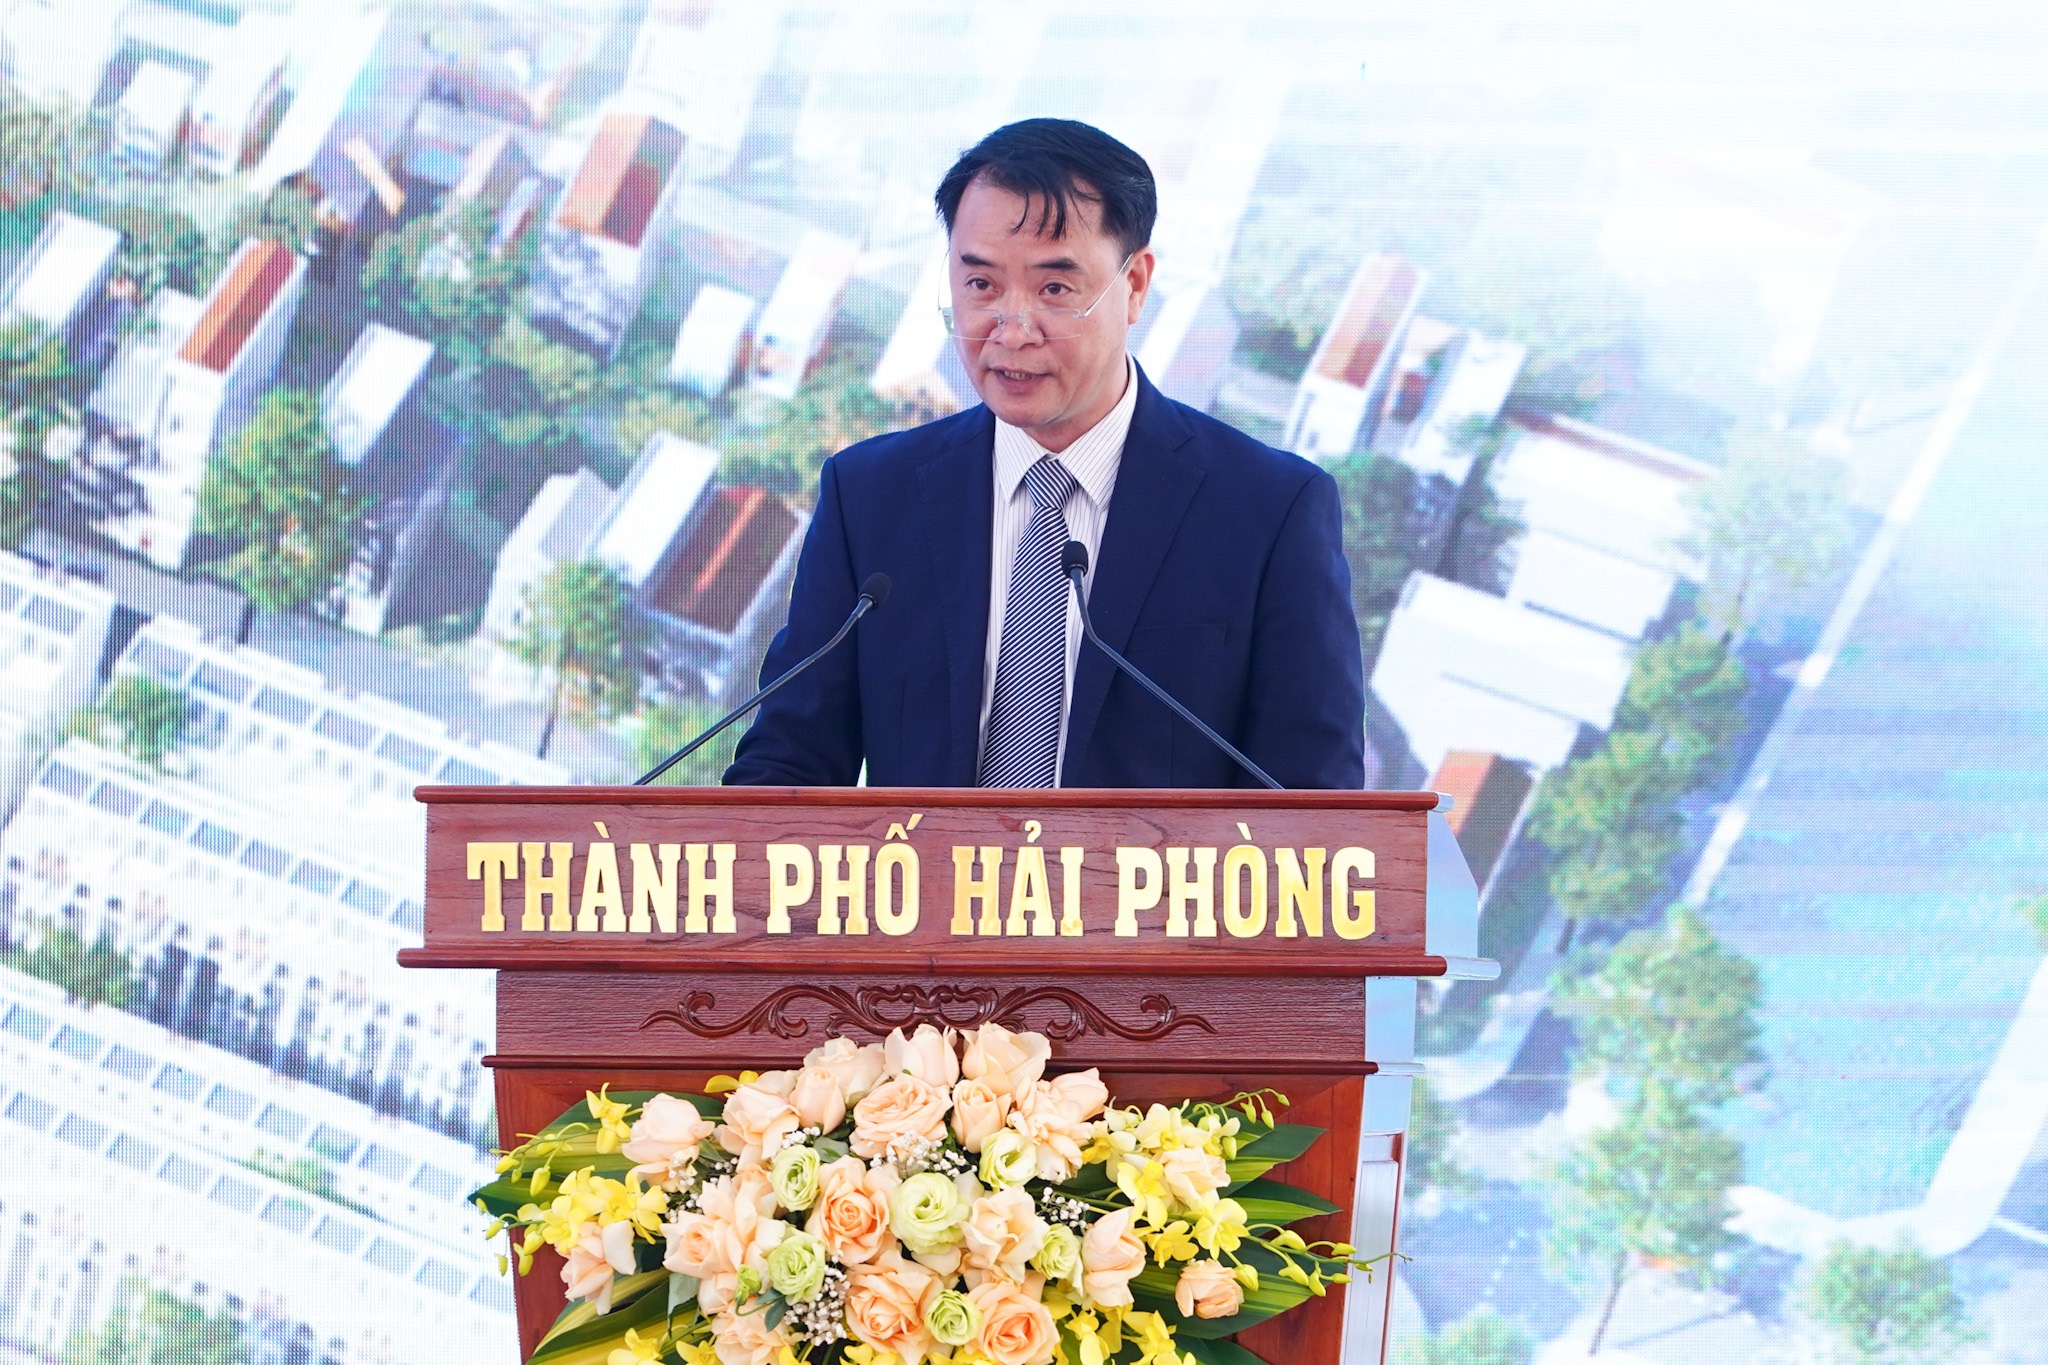 Ông Nguyễn Thế Tâm, Chủ tịch HĐQT Công ty Cổ phần Thái-Holding - chủ đầu tư báo cáo về Dự án. Ảnh: Thanh Sơn